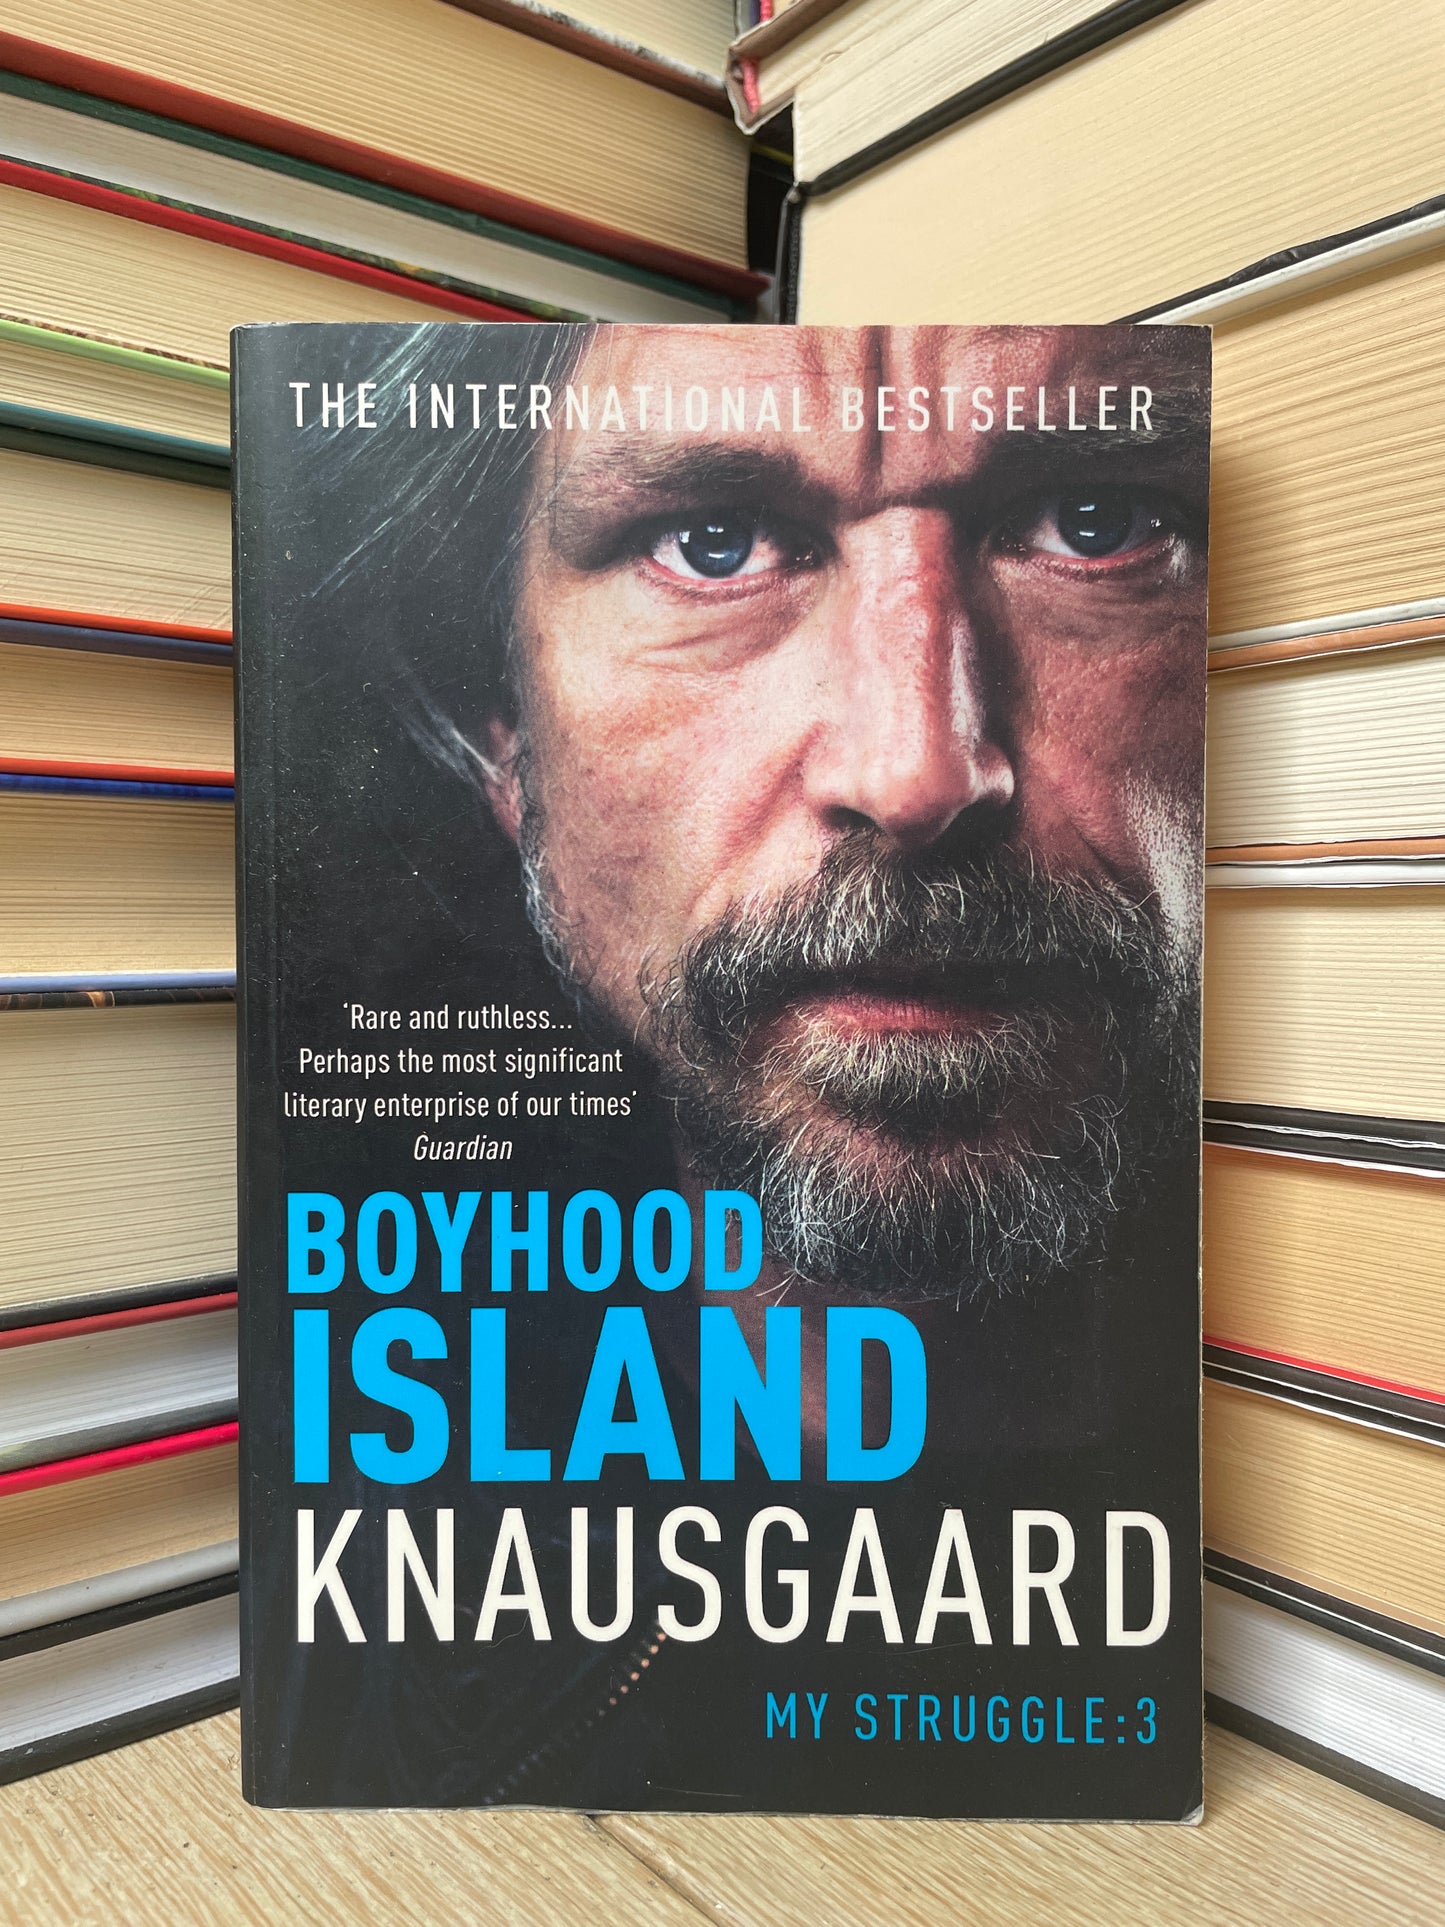 Karl Ove Knausgaard - My Struggle 3: Boyhood Island